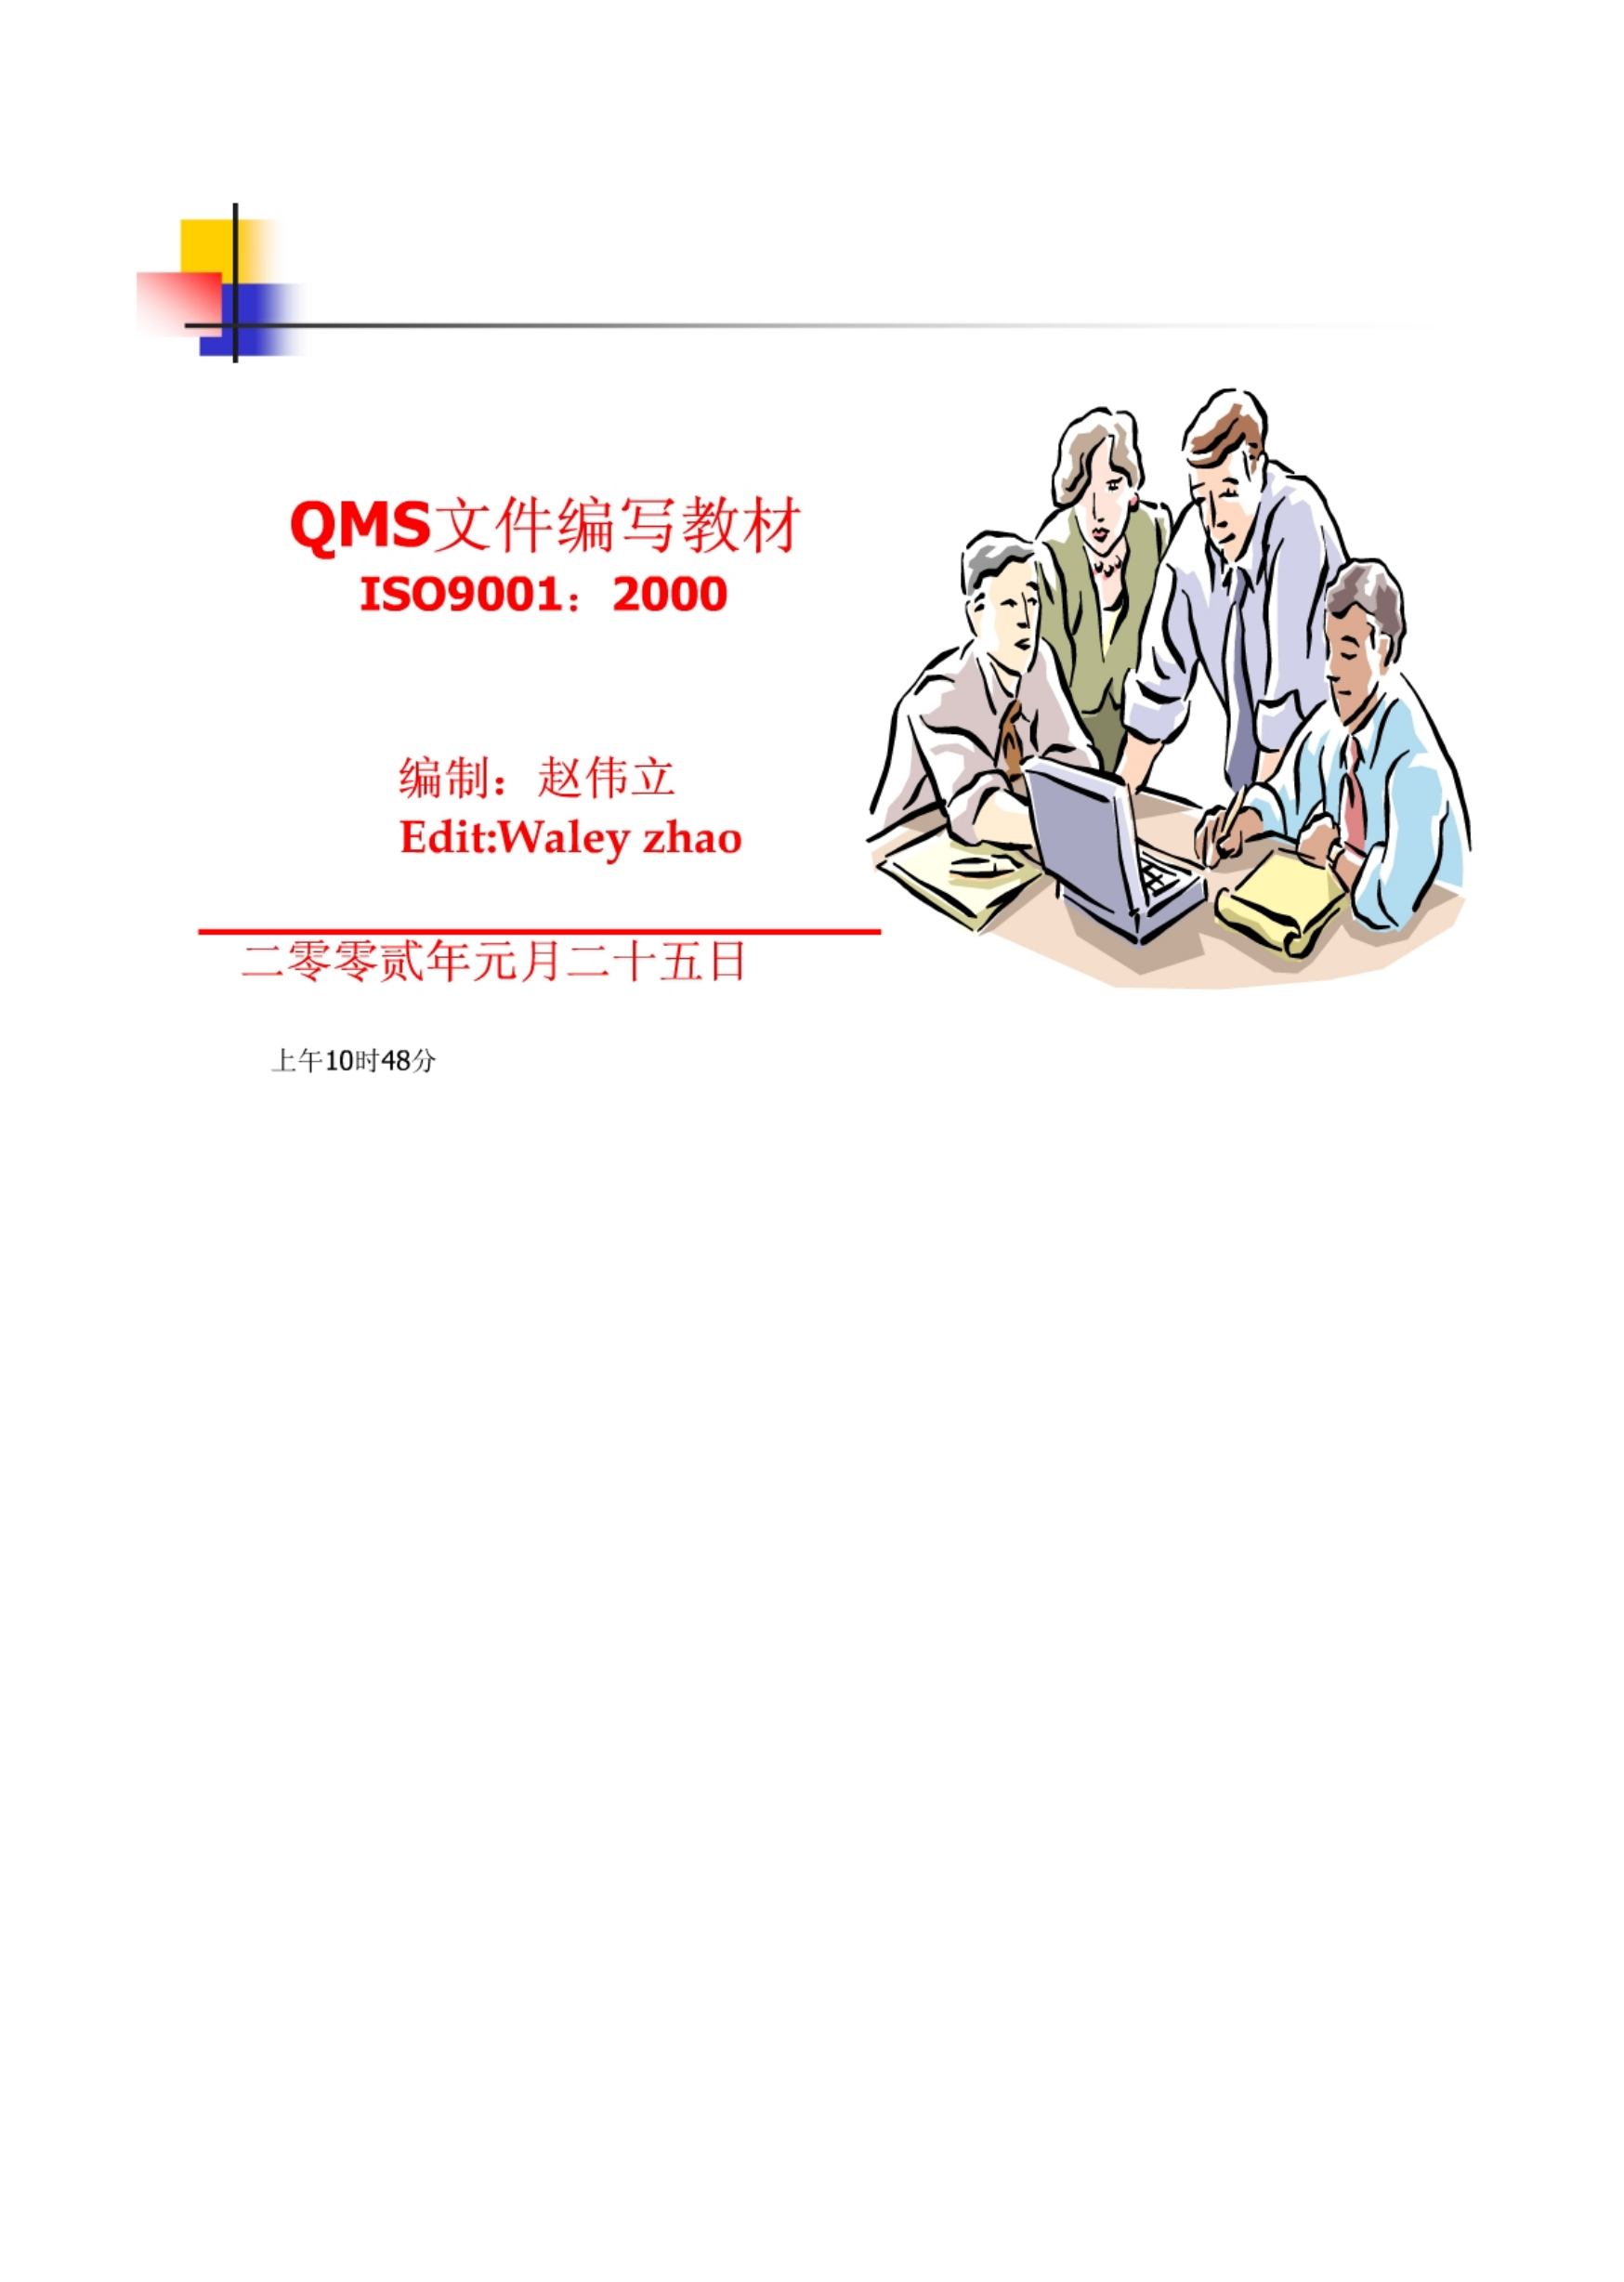 ISO9001质量管理体系文件编写与培训教程(好东西).pdf